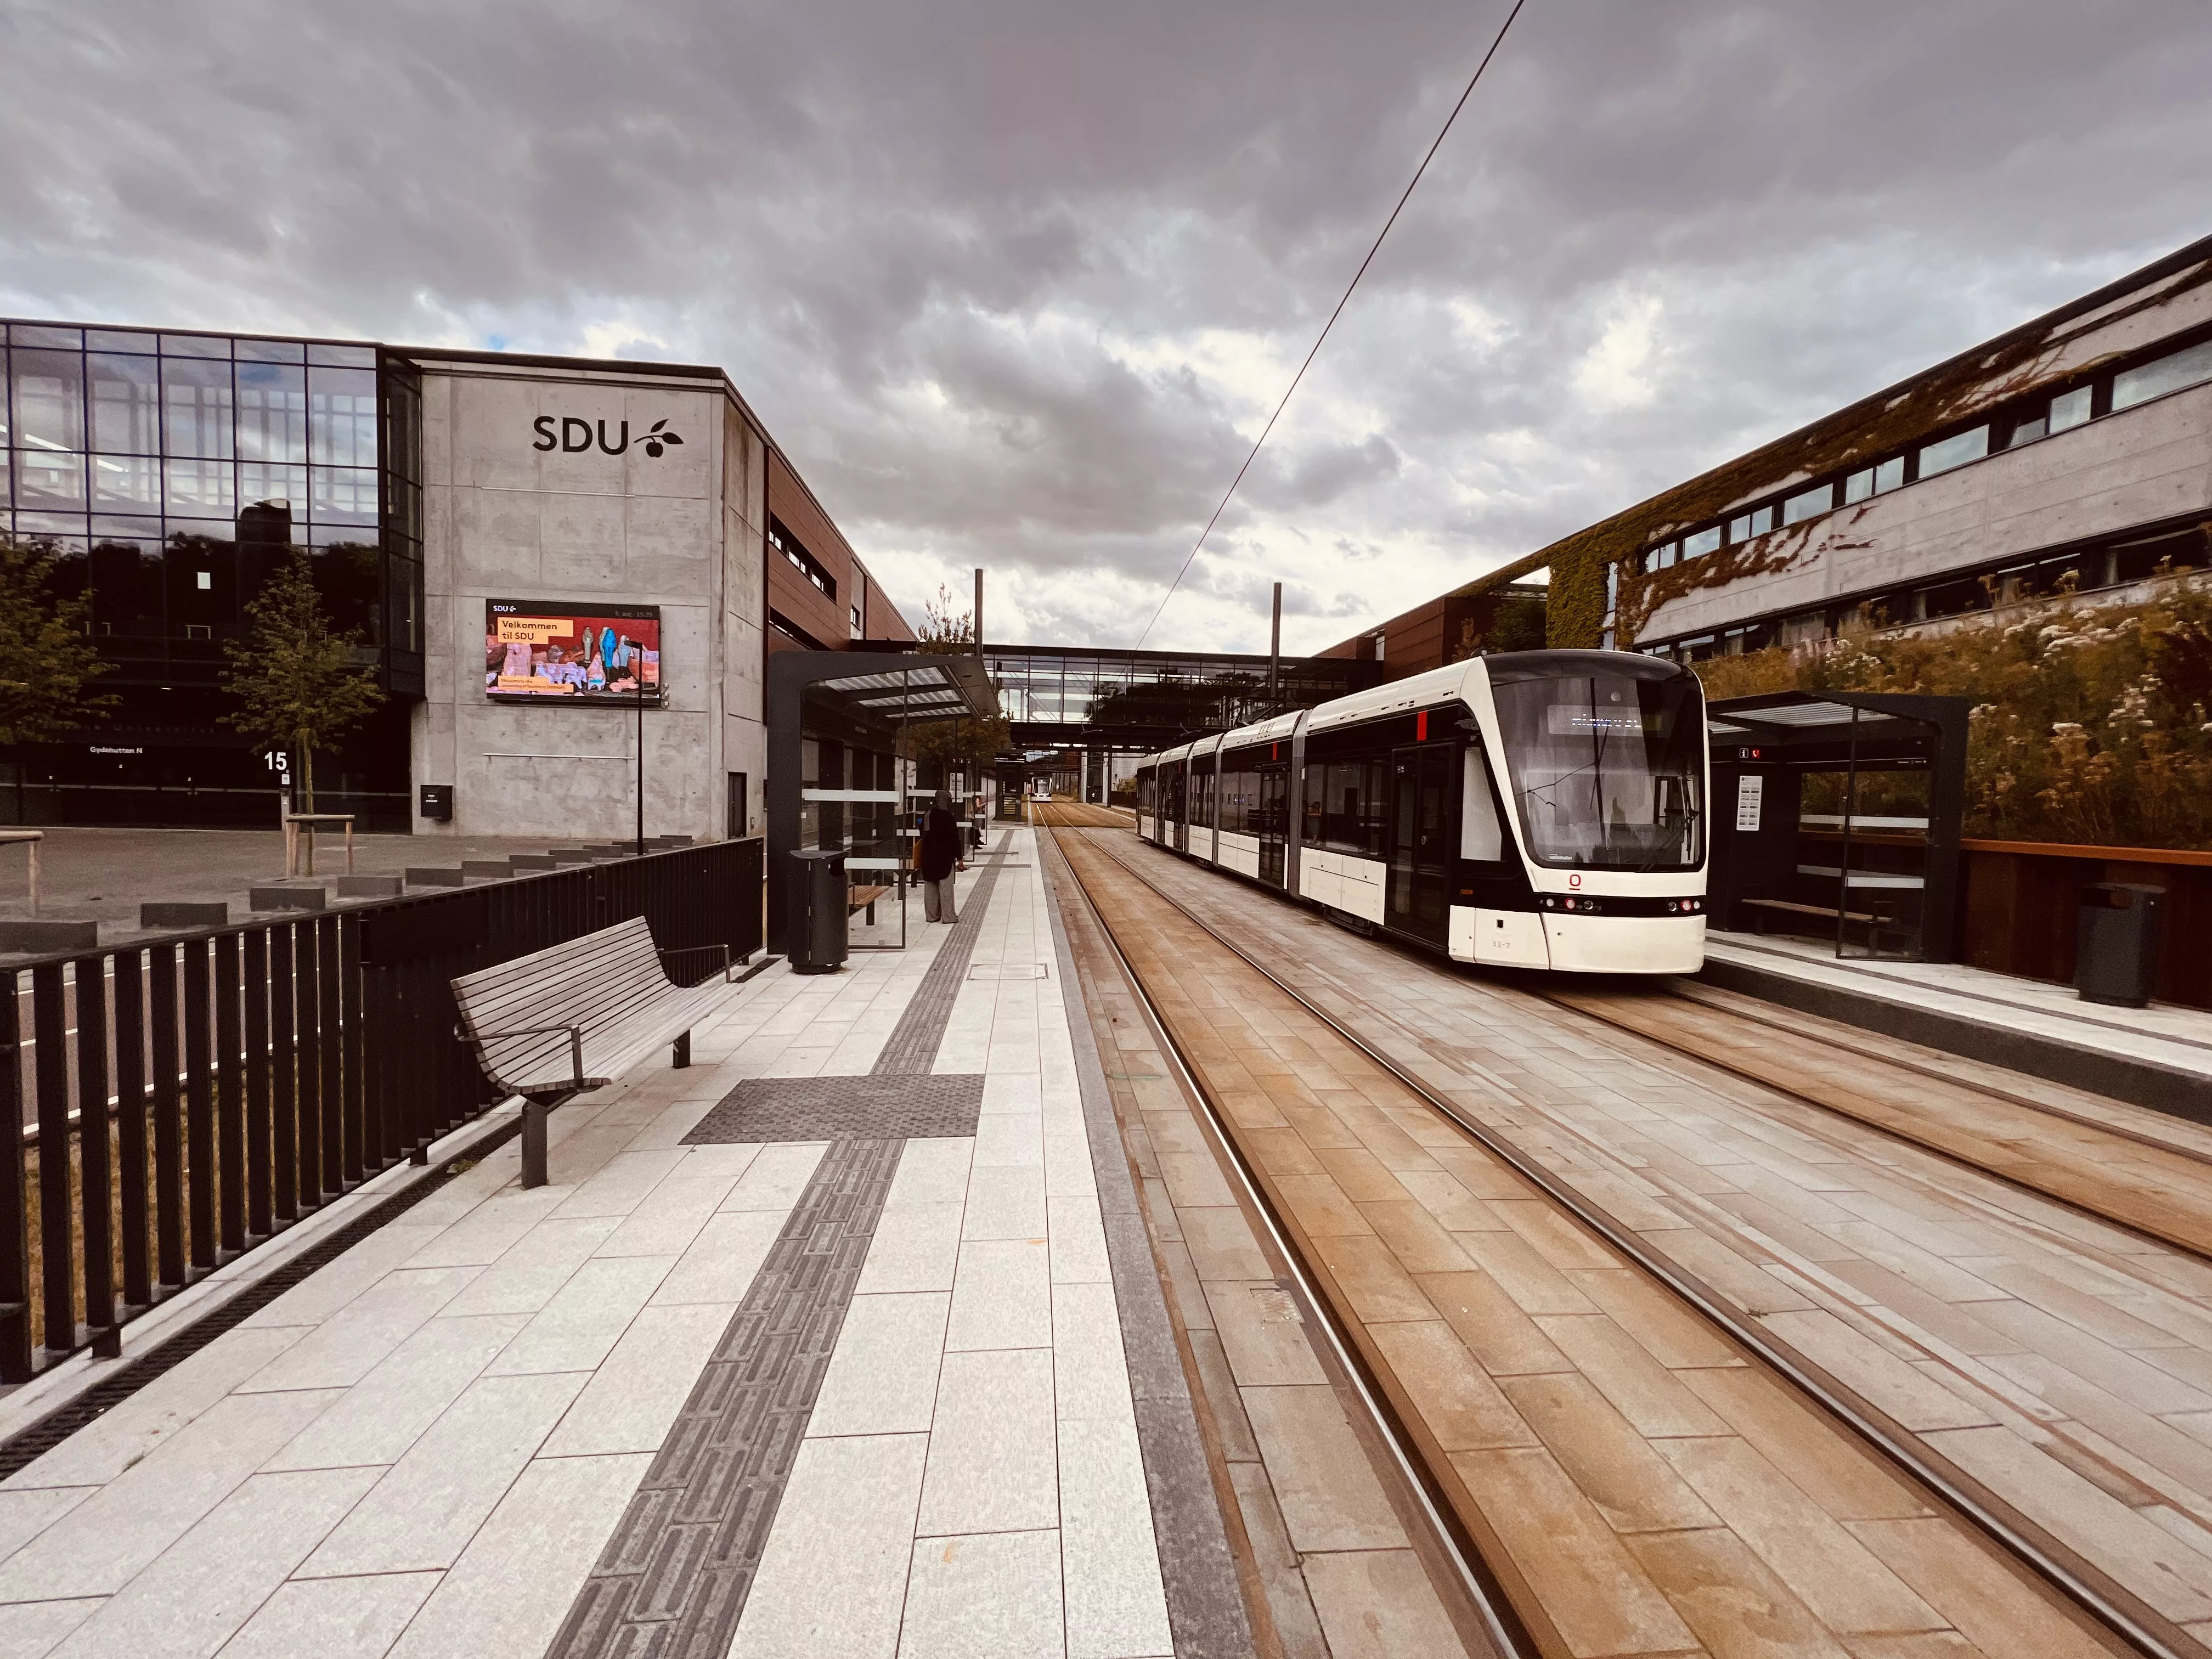 Billede af letbanetog ud for Campus Odense Letbanestation.